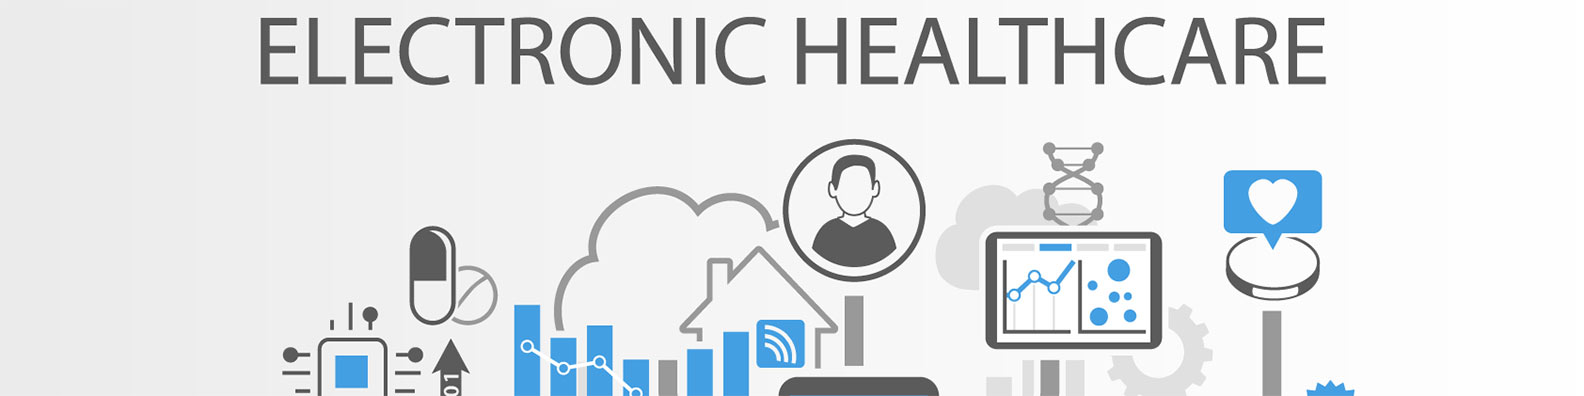 Electronic Healthcare EHR EMR LinkedIn Background Image